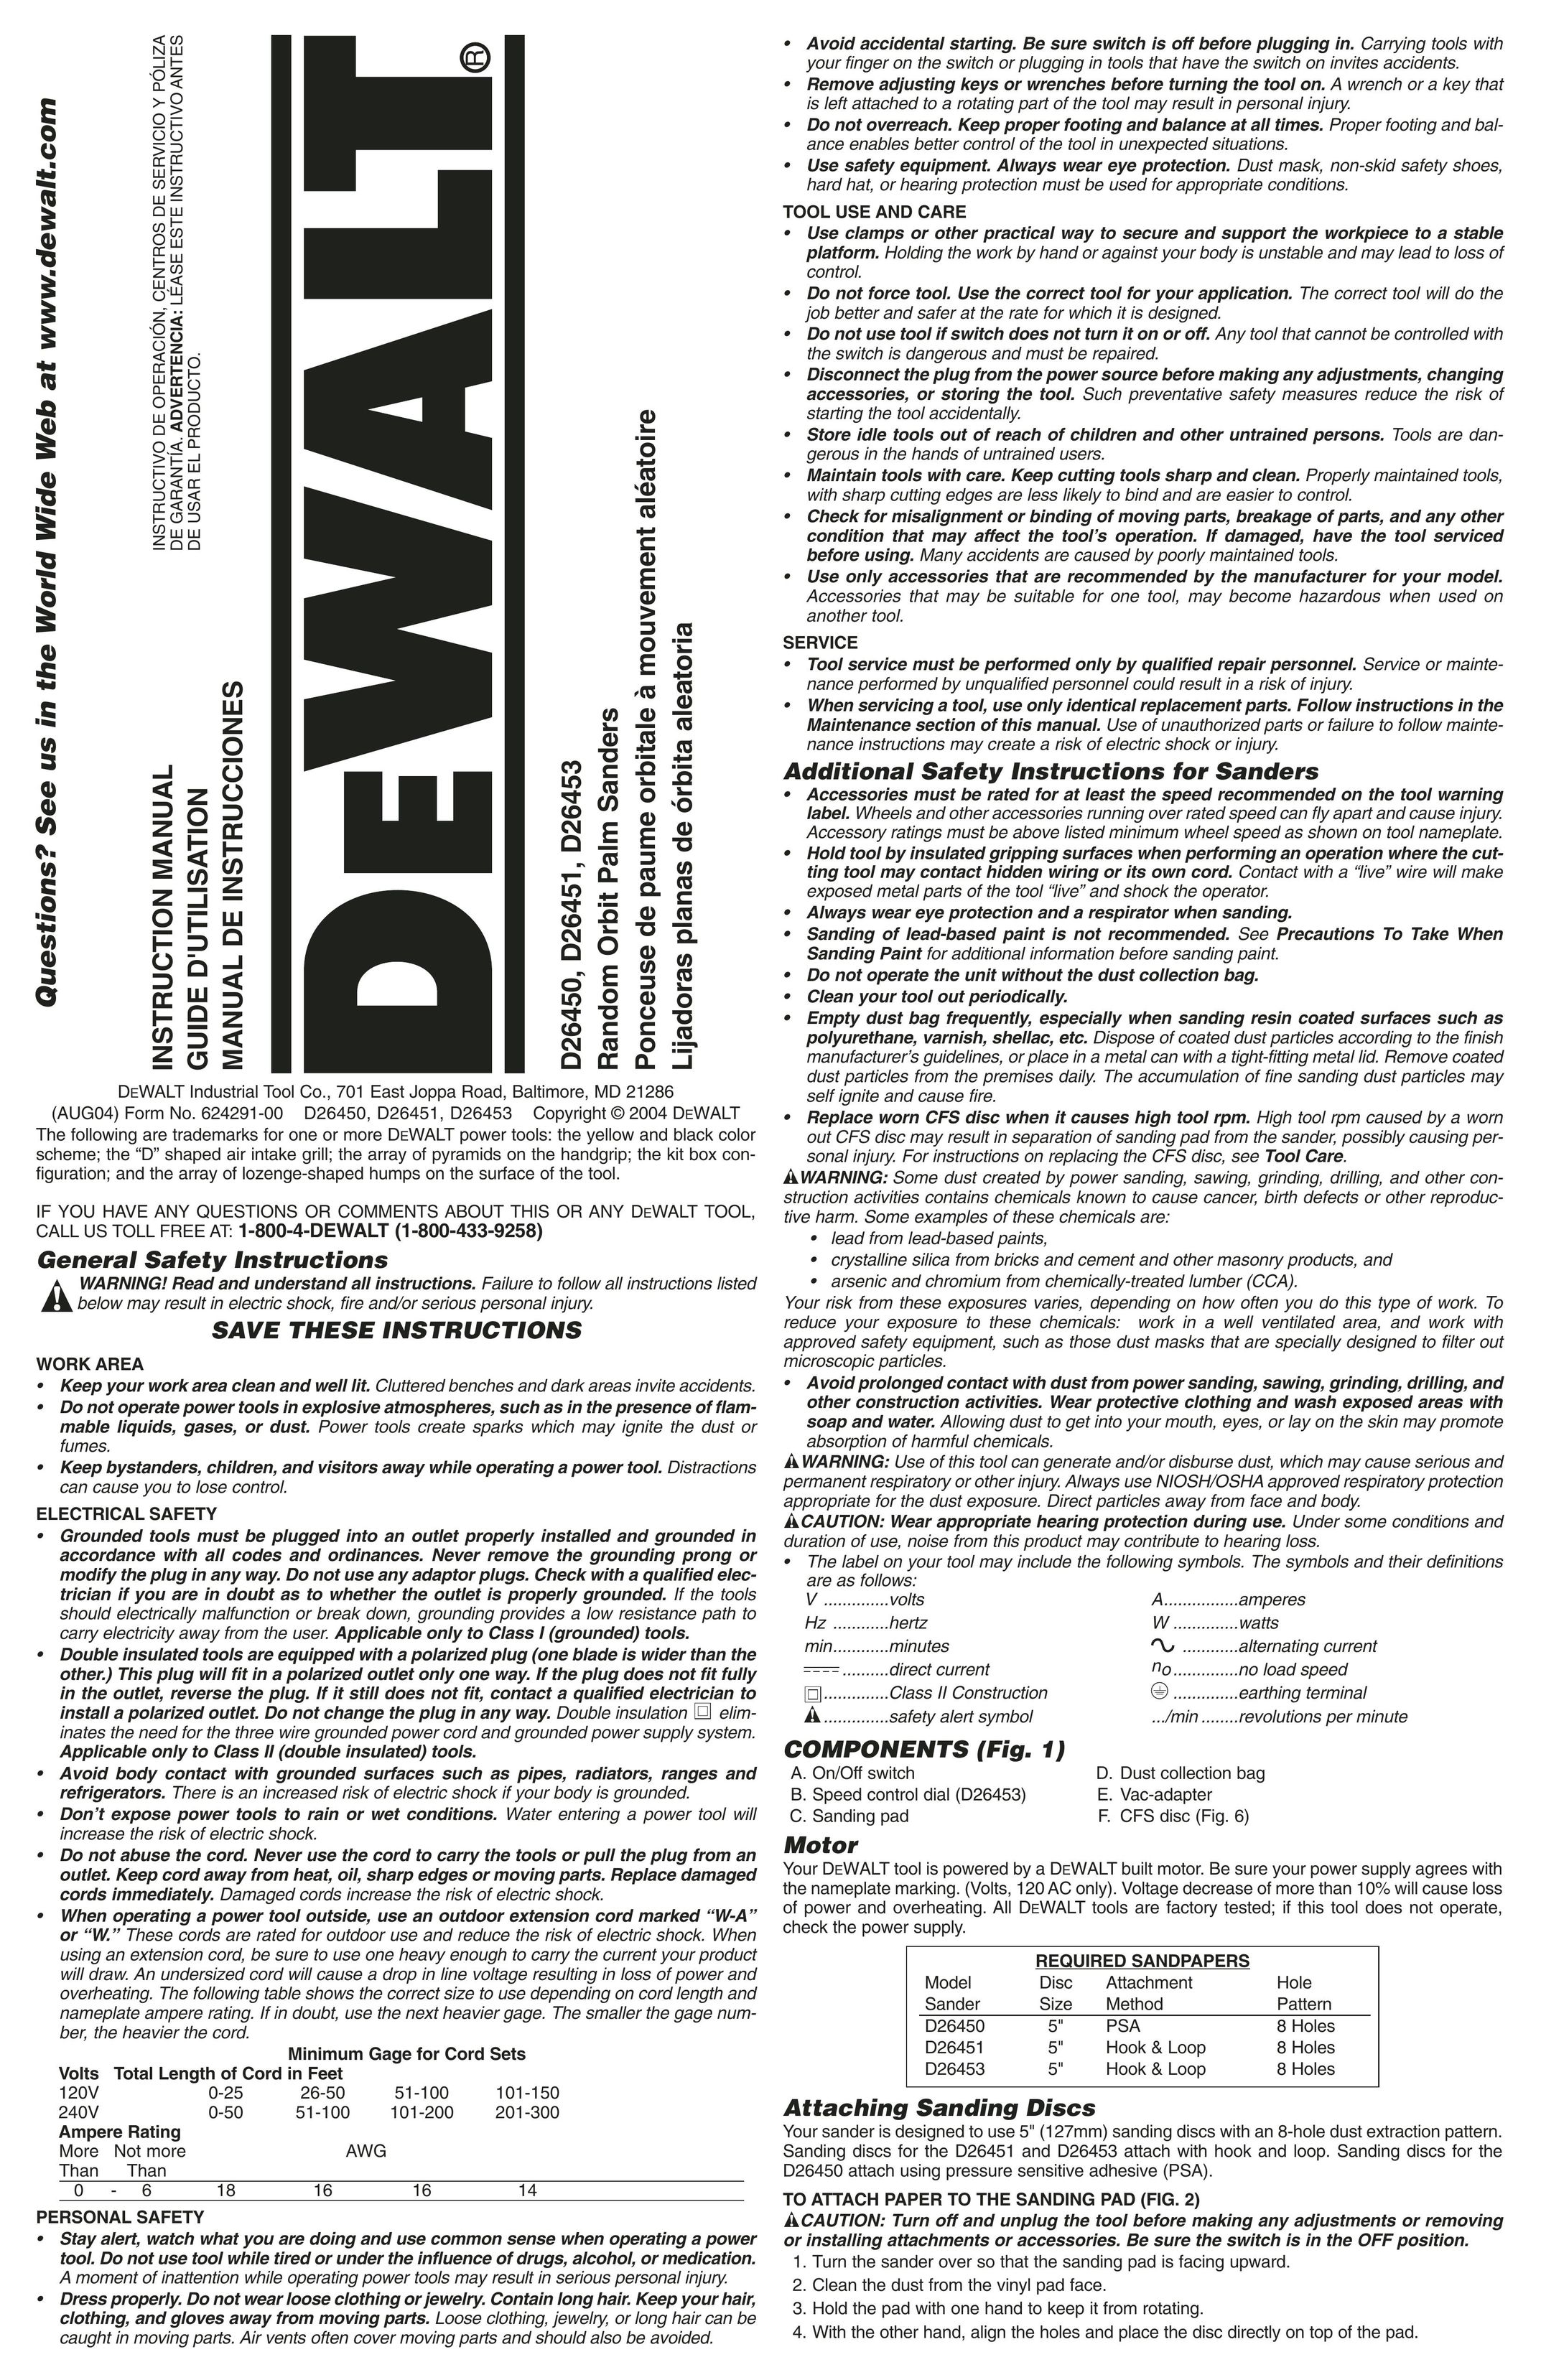 DeWalt D26451K Sander User Manual